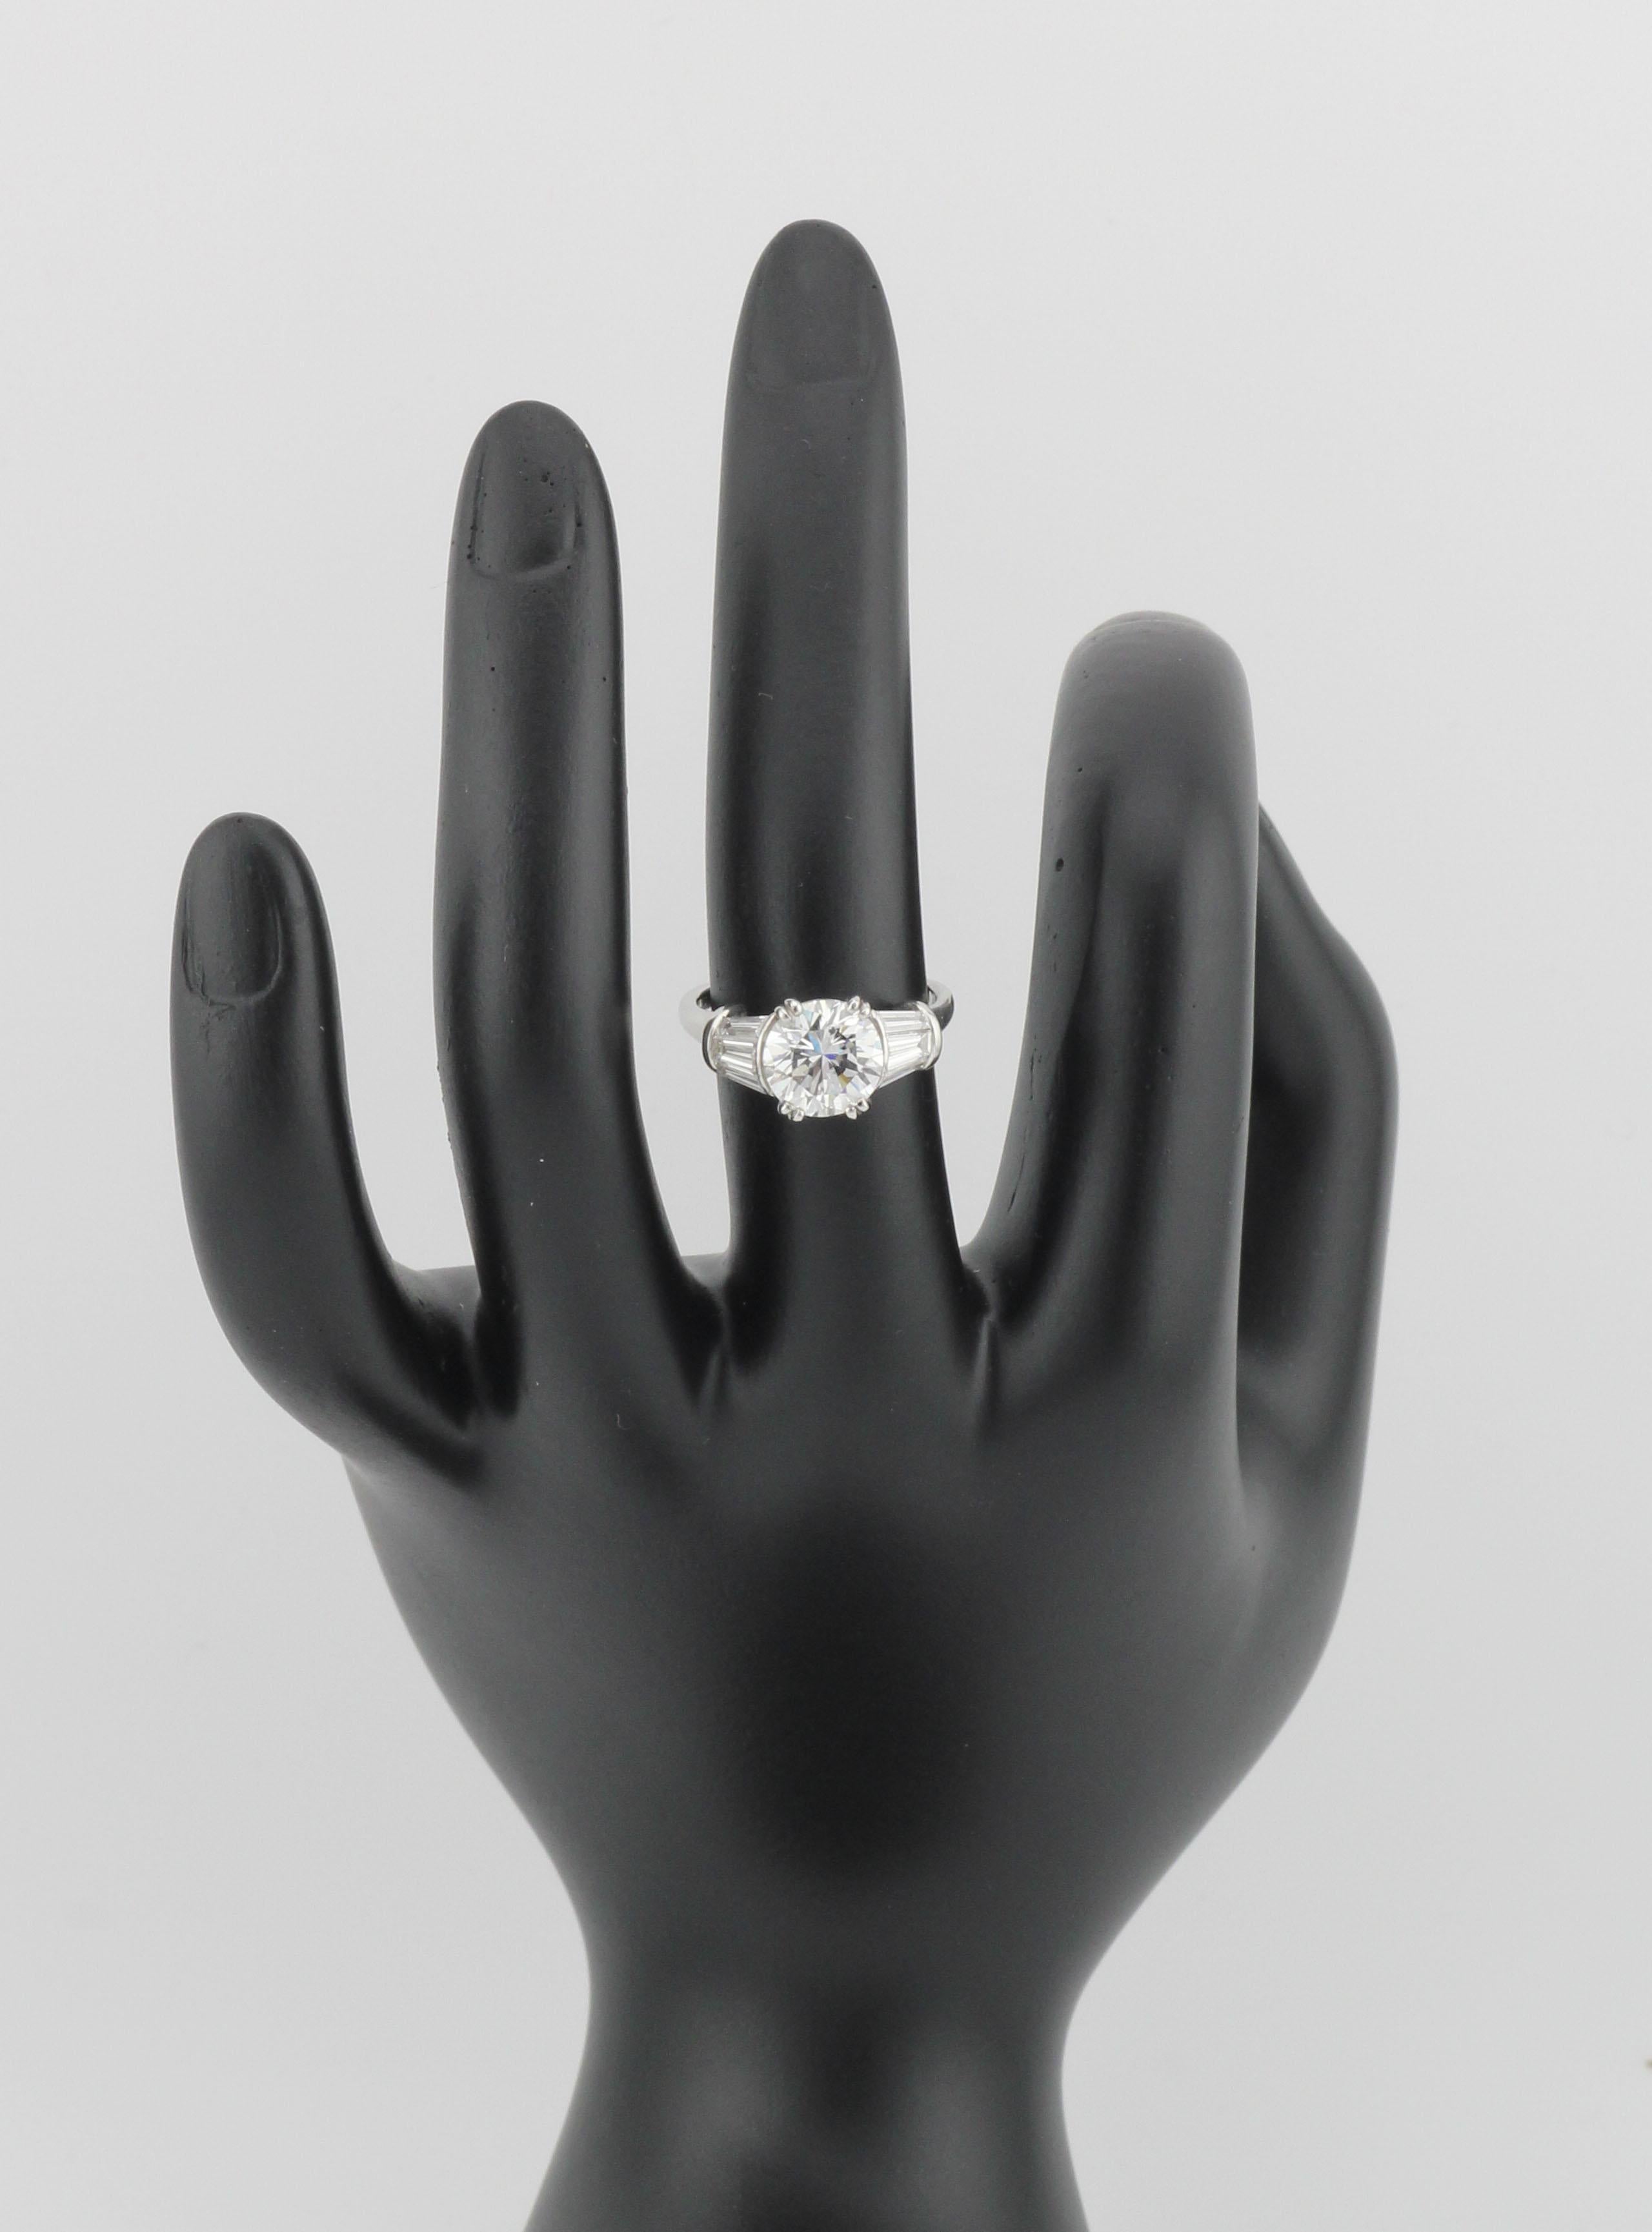 Dieser außergewöhnliche Vintage Harry Winston Diamant-Verlobungsring ist ein wahrer Beweis für die zeitlose Anziehungskraft eines der renommiertesten Juweliere der Welt und verleiht Ihrer Liebesgeschichte eine ganz besondere Note. Dieses in den